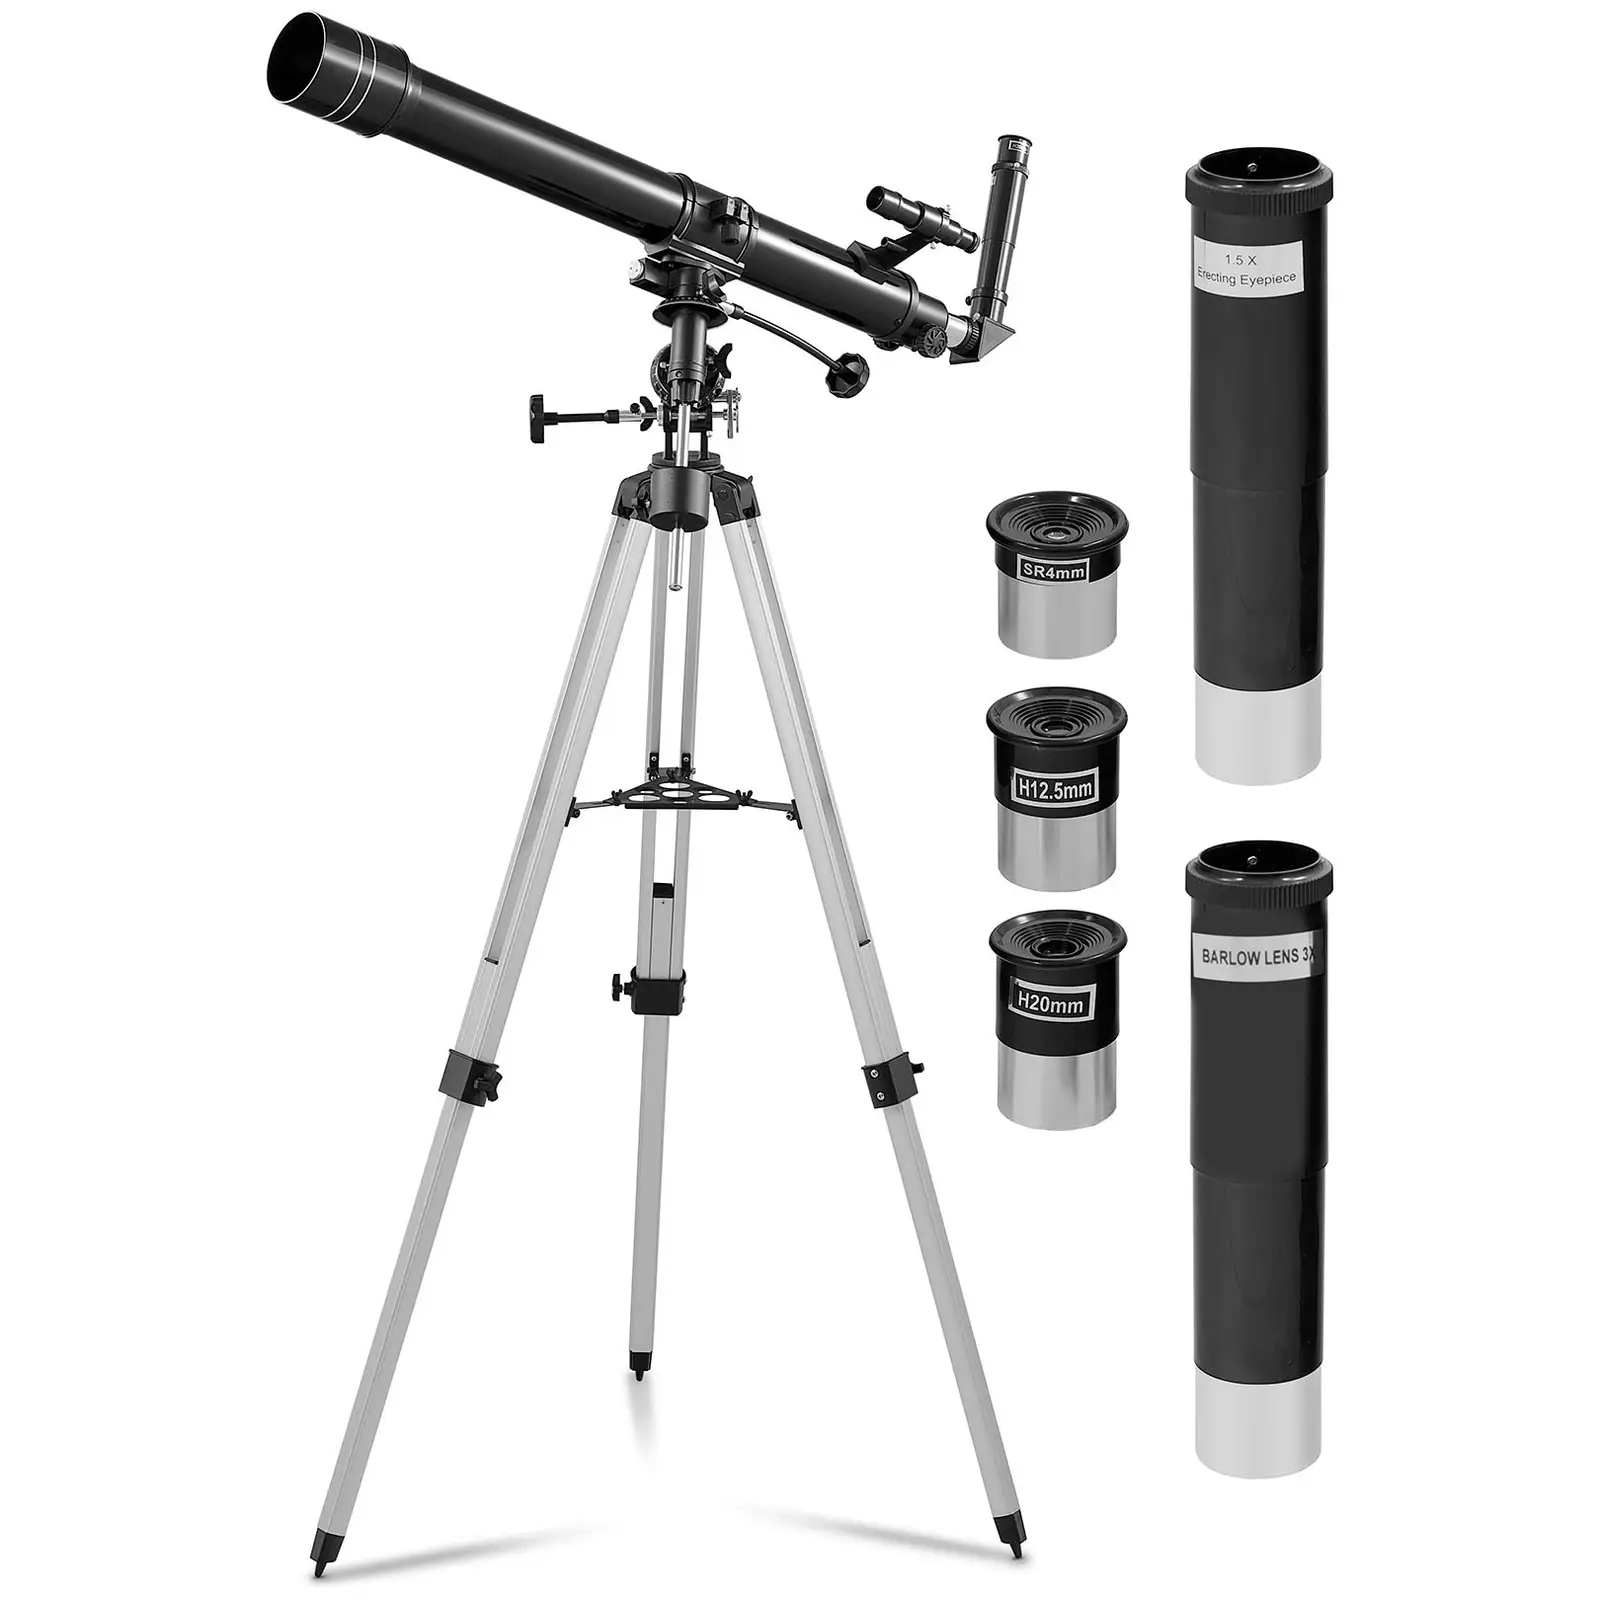 Tweedehands telescoop - Ø 70 mm - 900 mm - statief statief